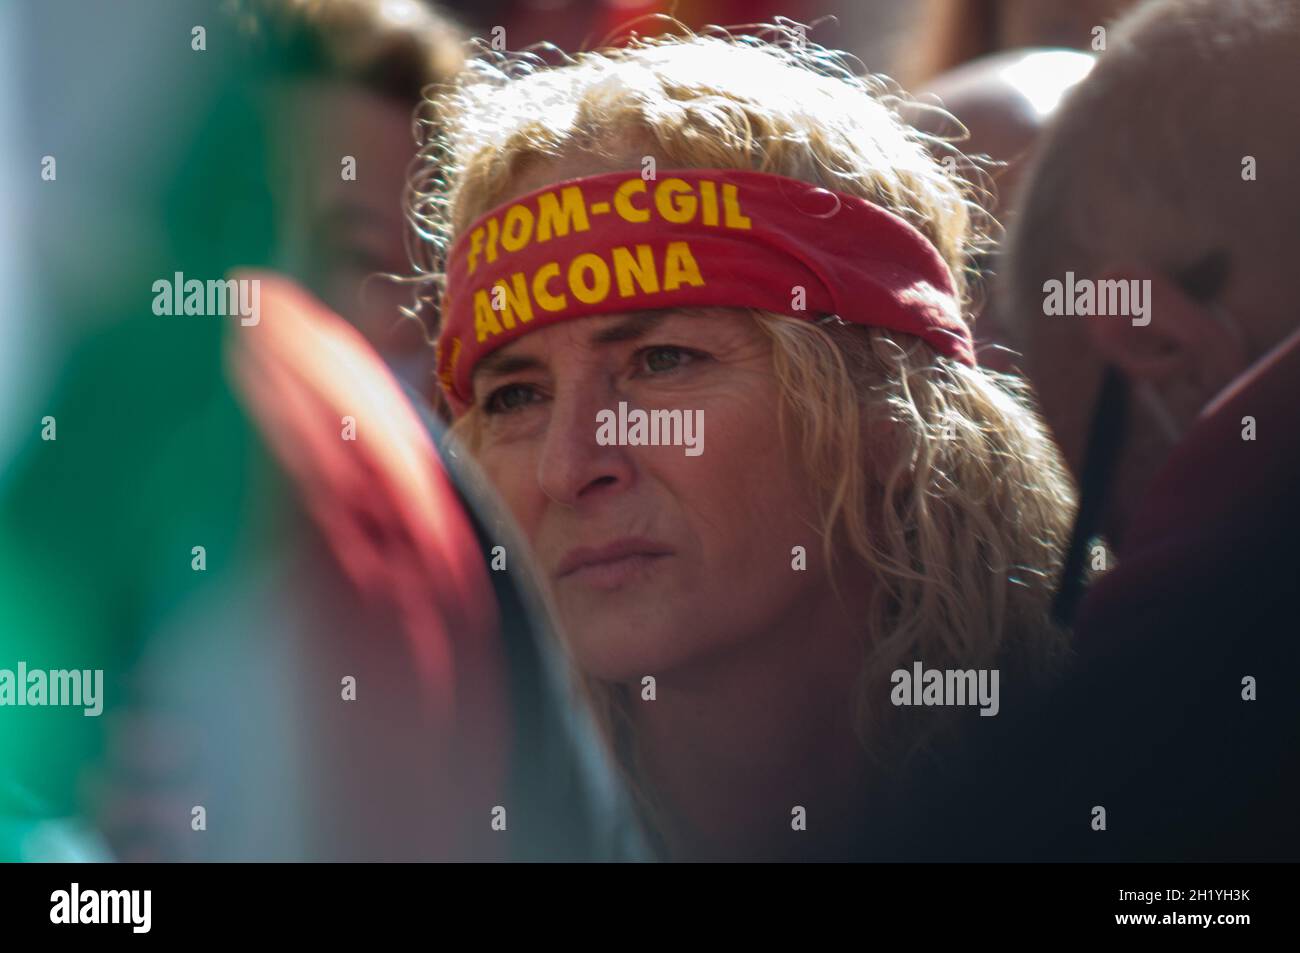 Rom, Italien. 19. Oktober 21: Whirlpool und Elica-Arbeiter unter Mise: 'Lasst uns nicht aufgeben' Kredit: Independent Photo Agency Srl/Alamy Live News Stockfoto